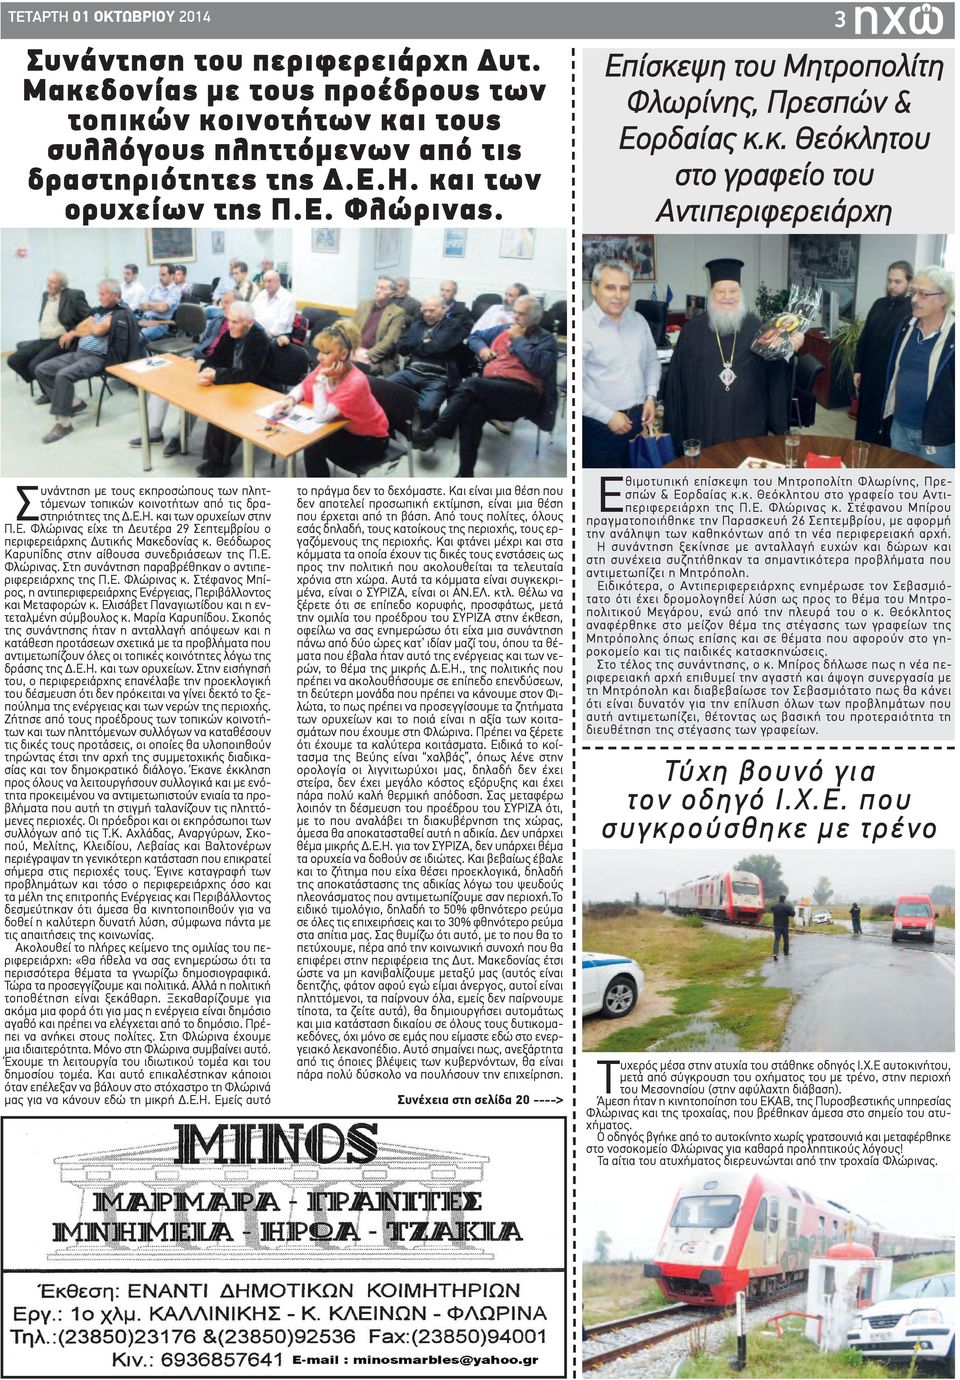 Ε.Η. και των ορυχείων στην Π.Ε. Φλώρινας είχε τη Δευτέρα 29 Σεπτεμβρίου ο περιφερειάρχης Δυτικής Μακεδονίας κ. Θεόδωρος Καρυπίδης στην αίθουσα συνεδριάσεων της Π.Ε. Φλώρινας. Στη συνάντηση παραβρέθηκαν ο αντιπεριφερειάρχης της Π.